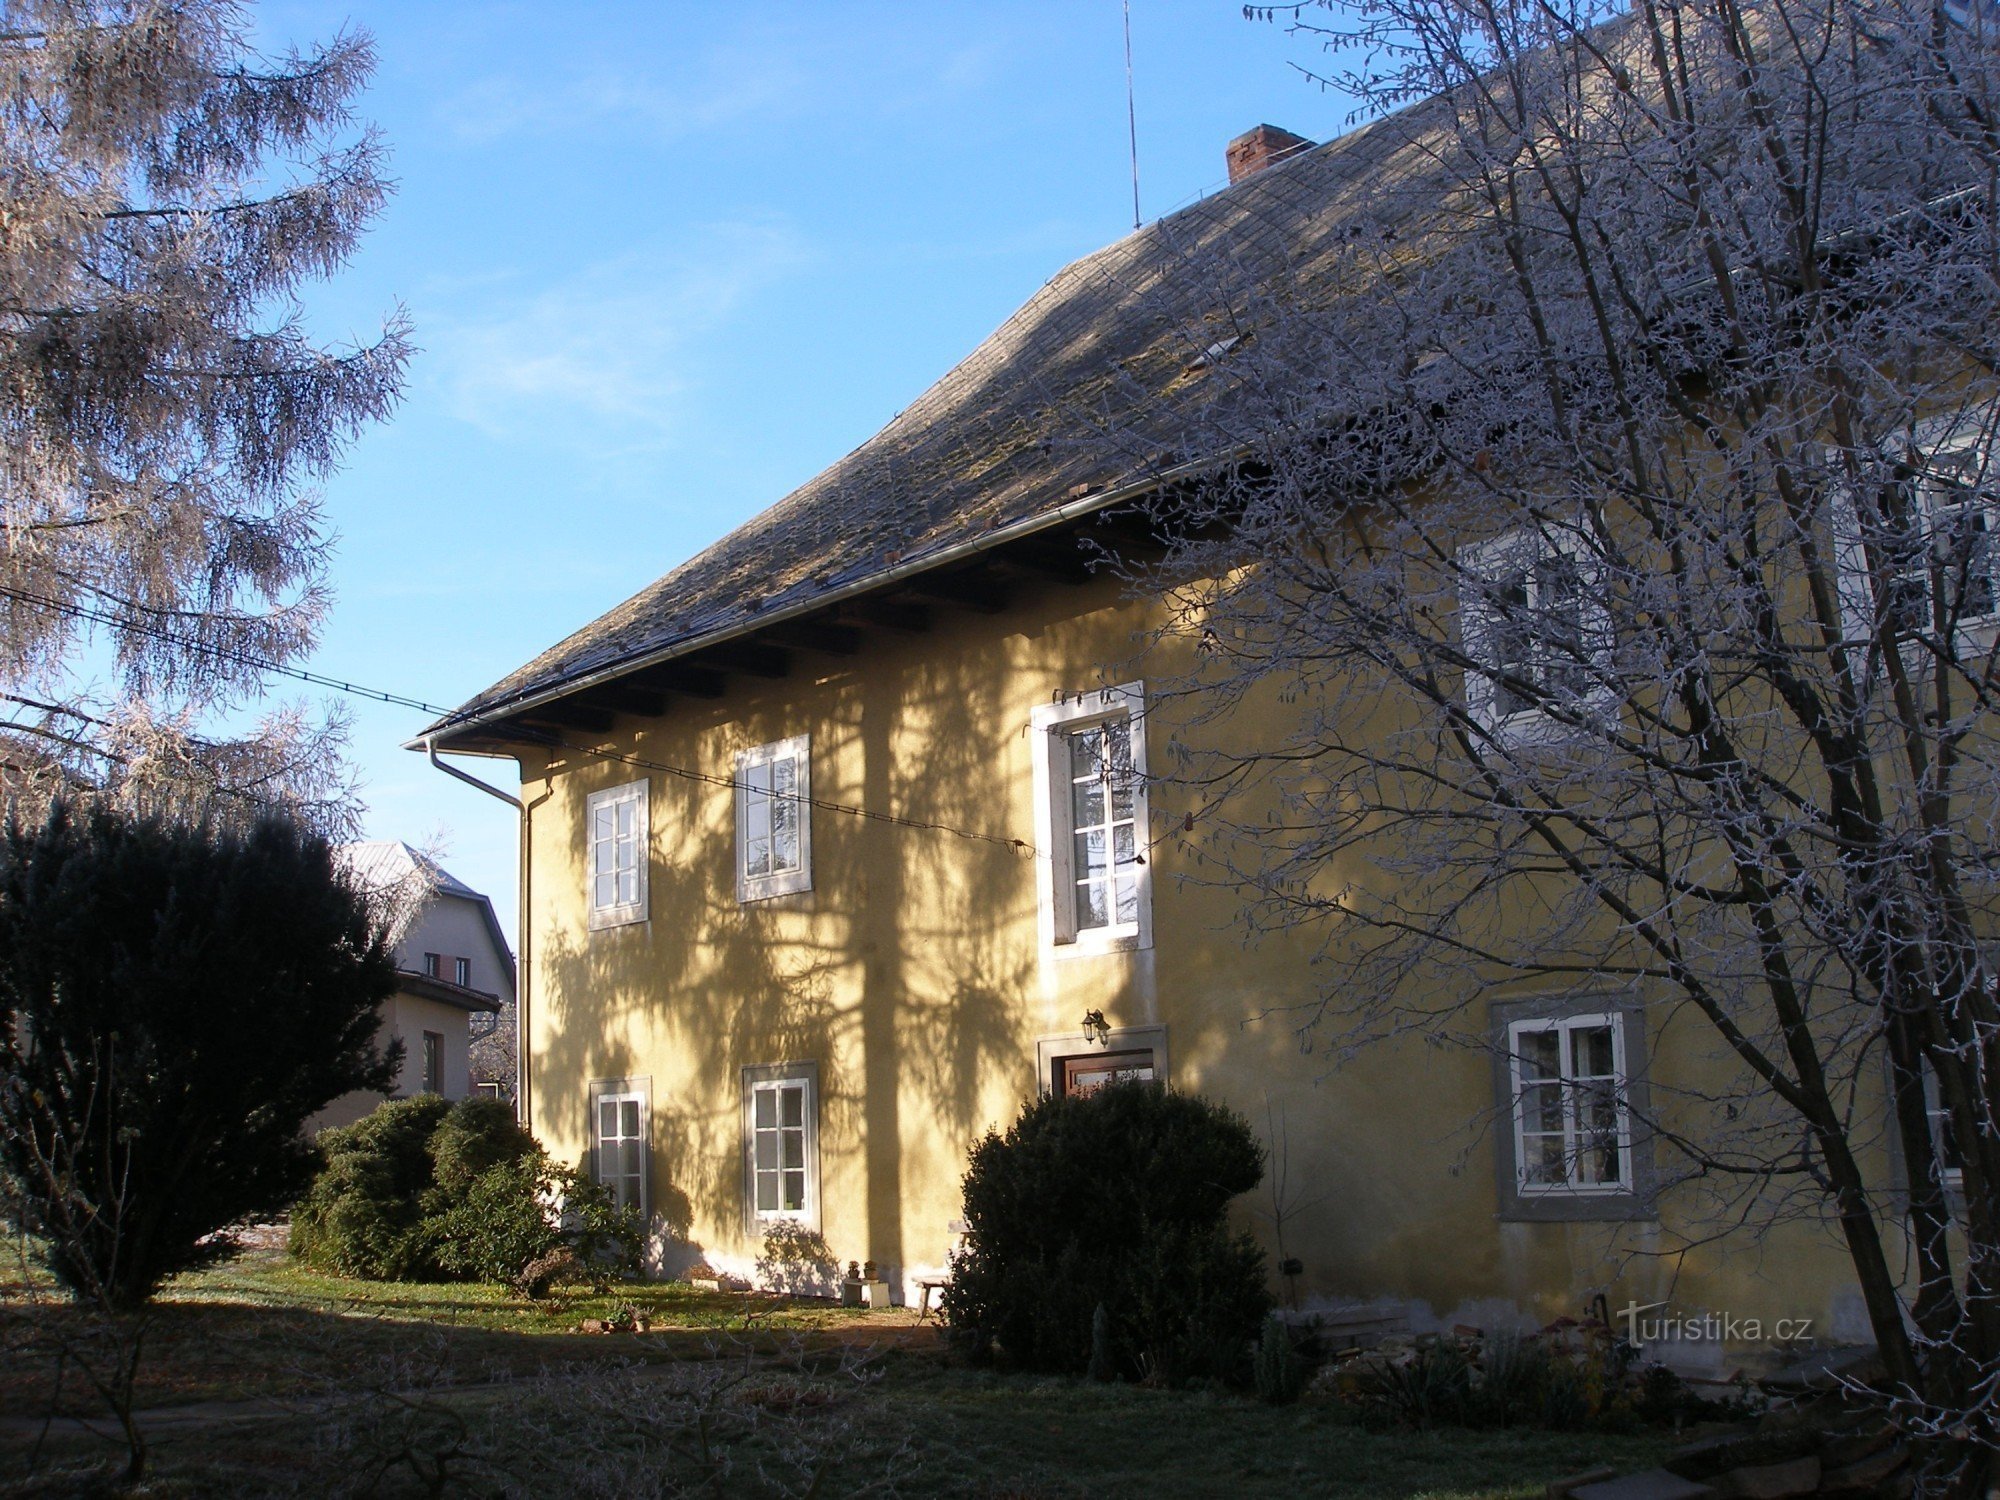 L'ancien presbytère du village de Sudslava construit en 1692